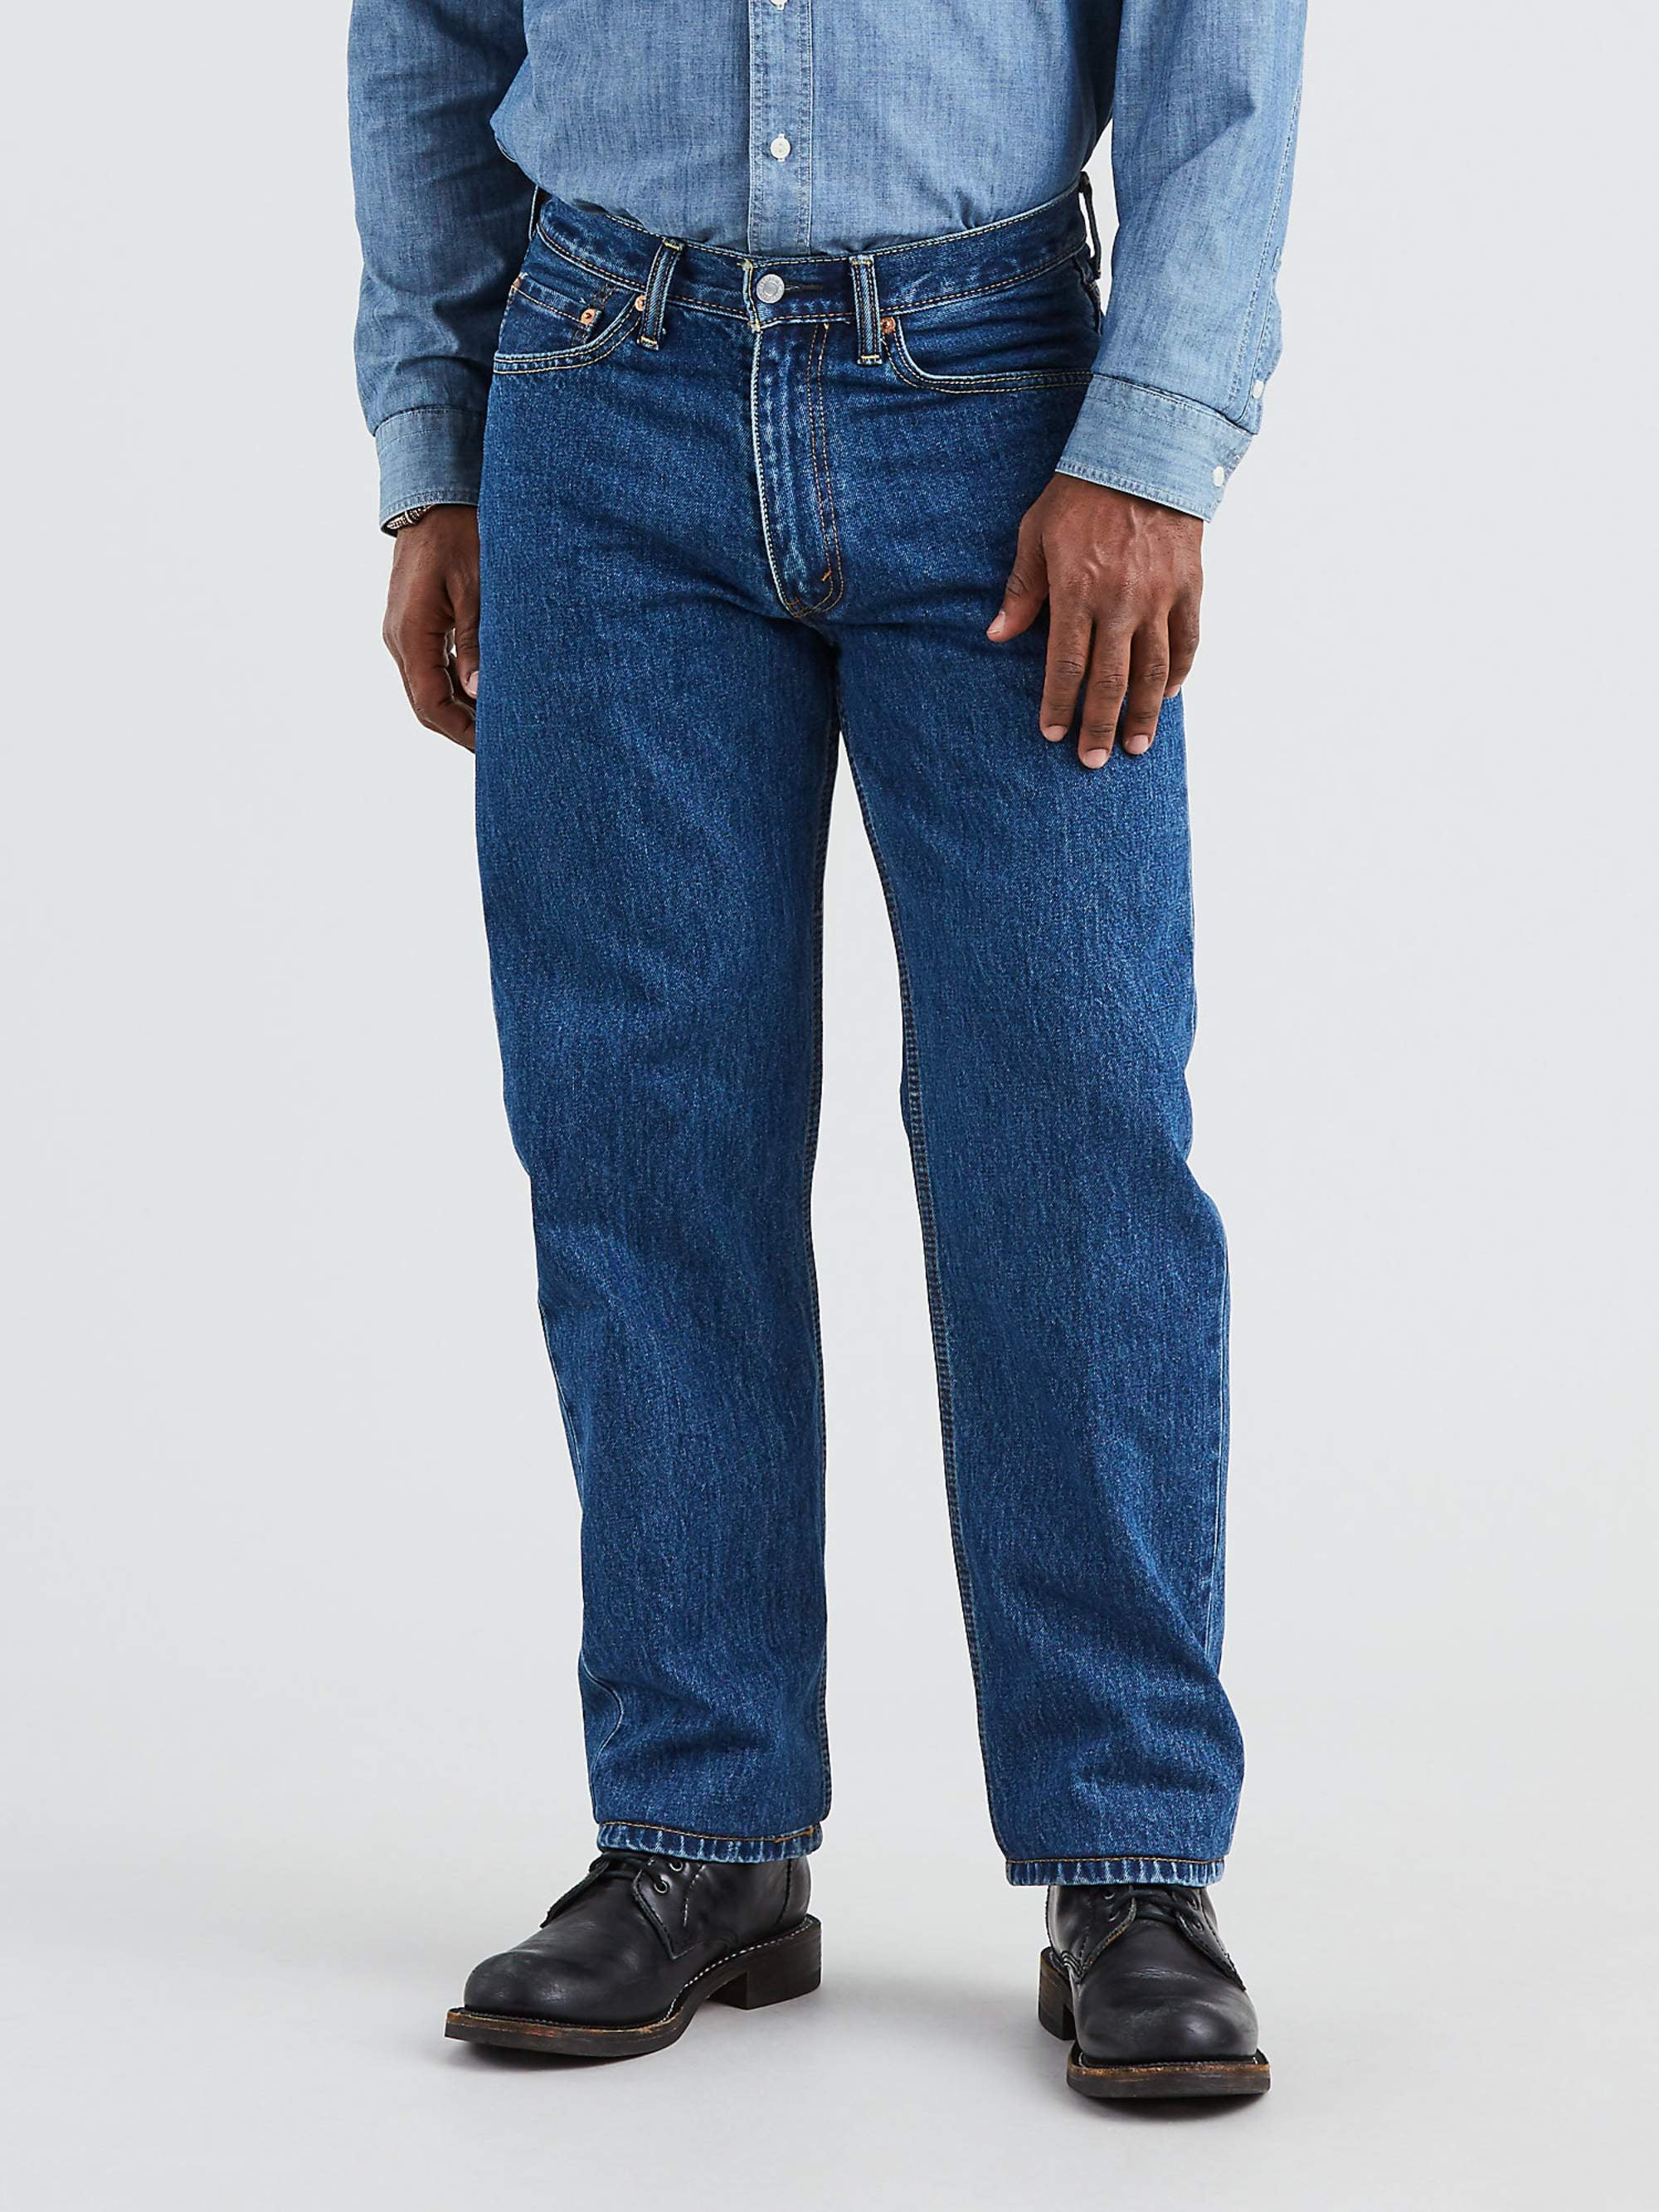 Levi's - Levis Men's 550 Relaxed Fit Jeans - Walmart.com